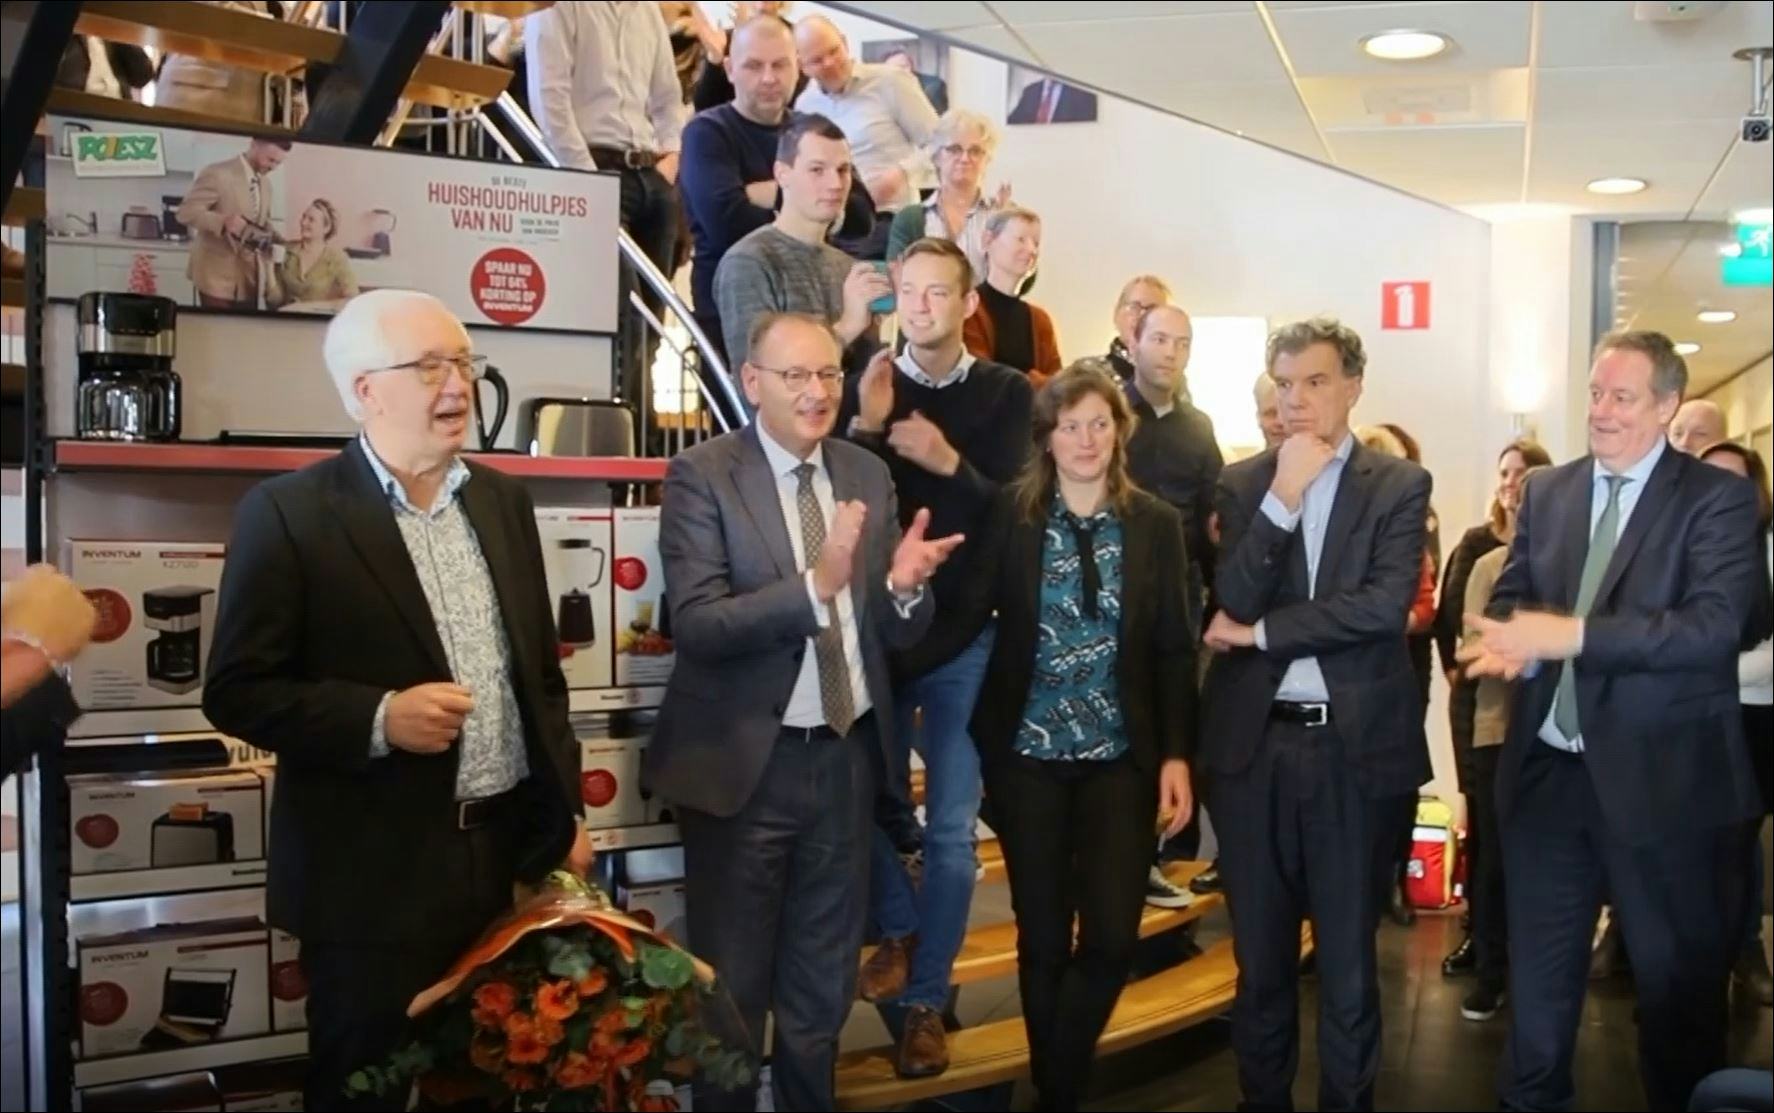 Video: Poiesz neemt prijs Kerstrapport in ontvangst